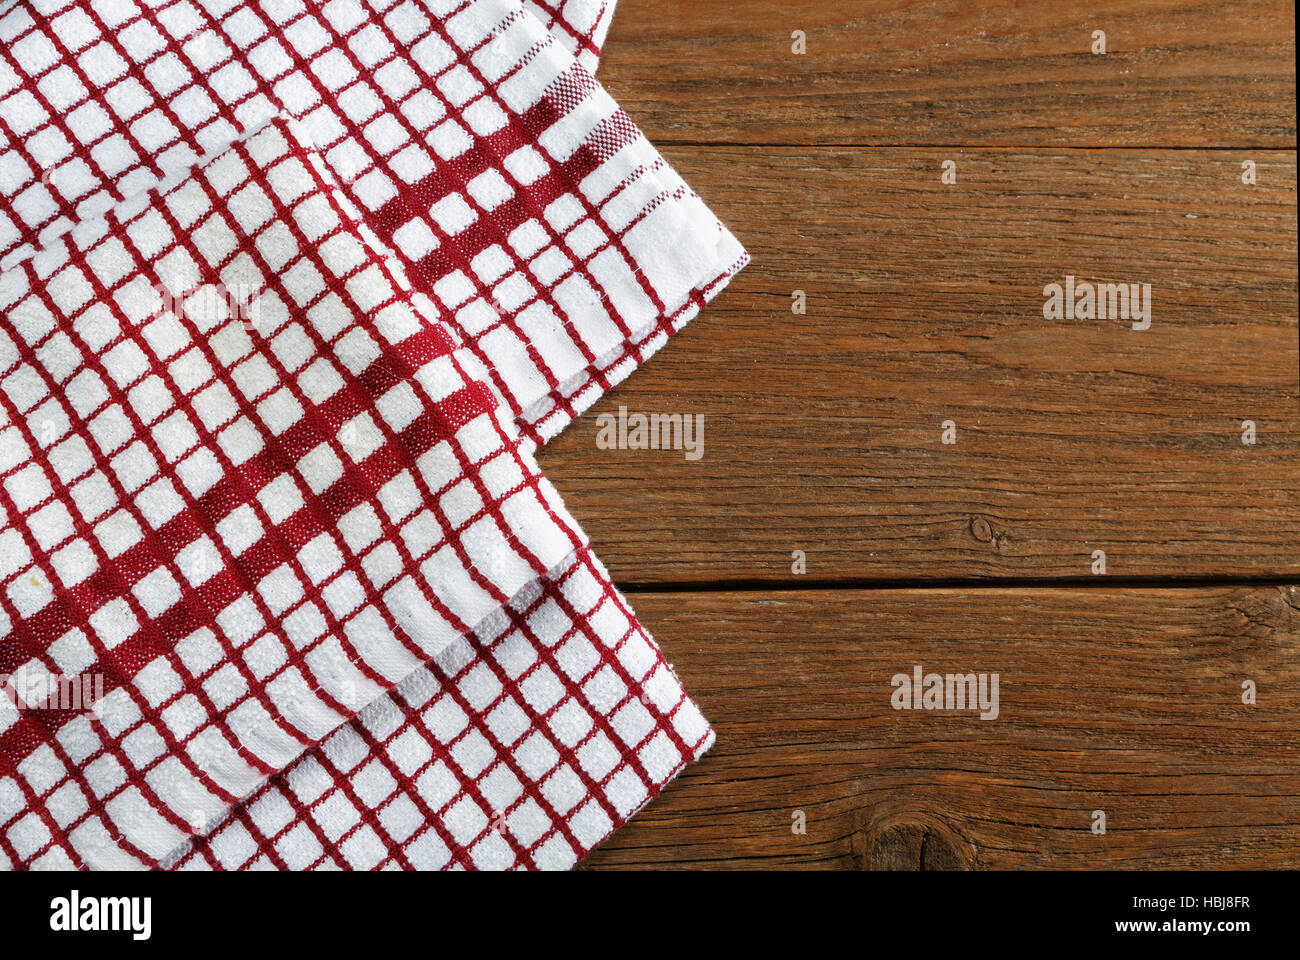 https://c8.alamy.com/comp/HBJ8FR/kitchen-towels-on-rustic-table-HBJ8FR.jpg